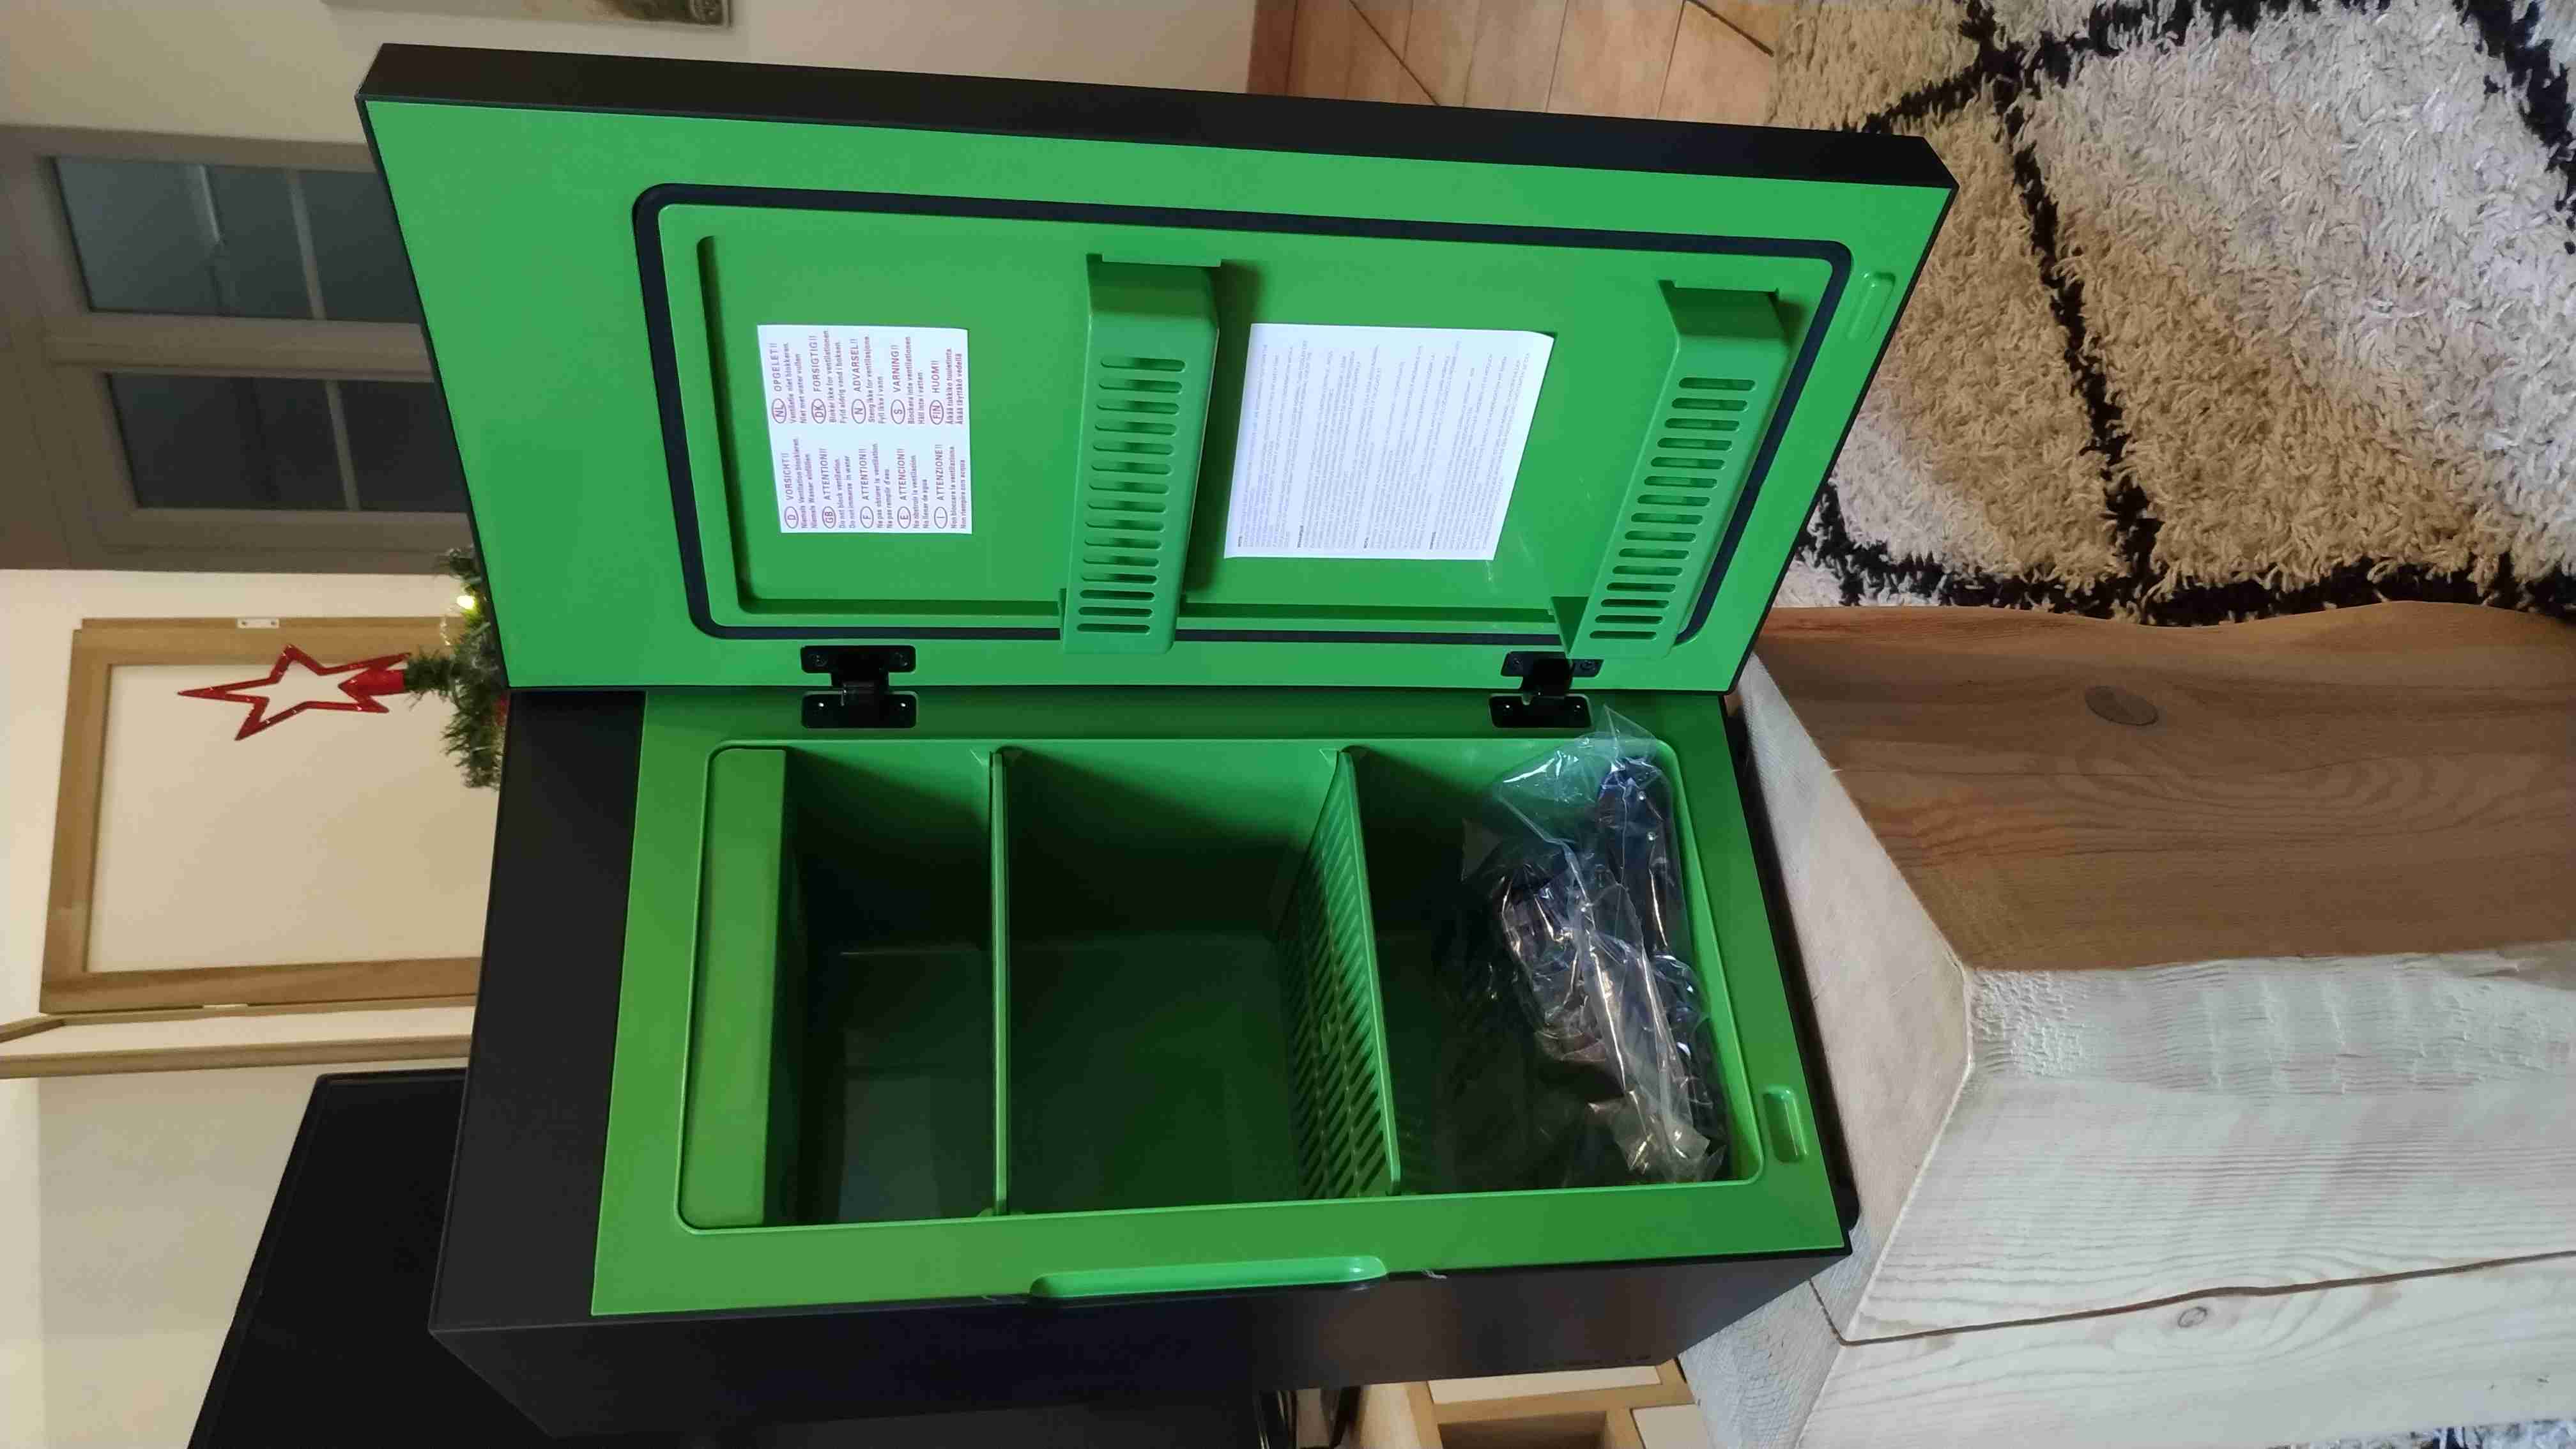 Unboxing du MINI-FRIGO XBOX !! Un vrai frigo, de la taille d'une